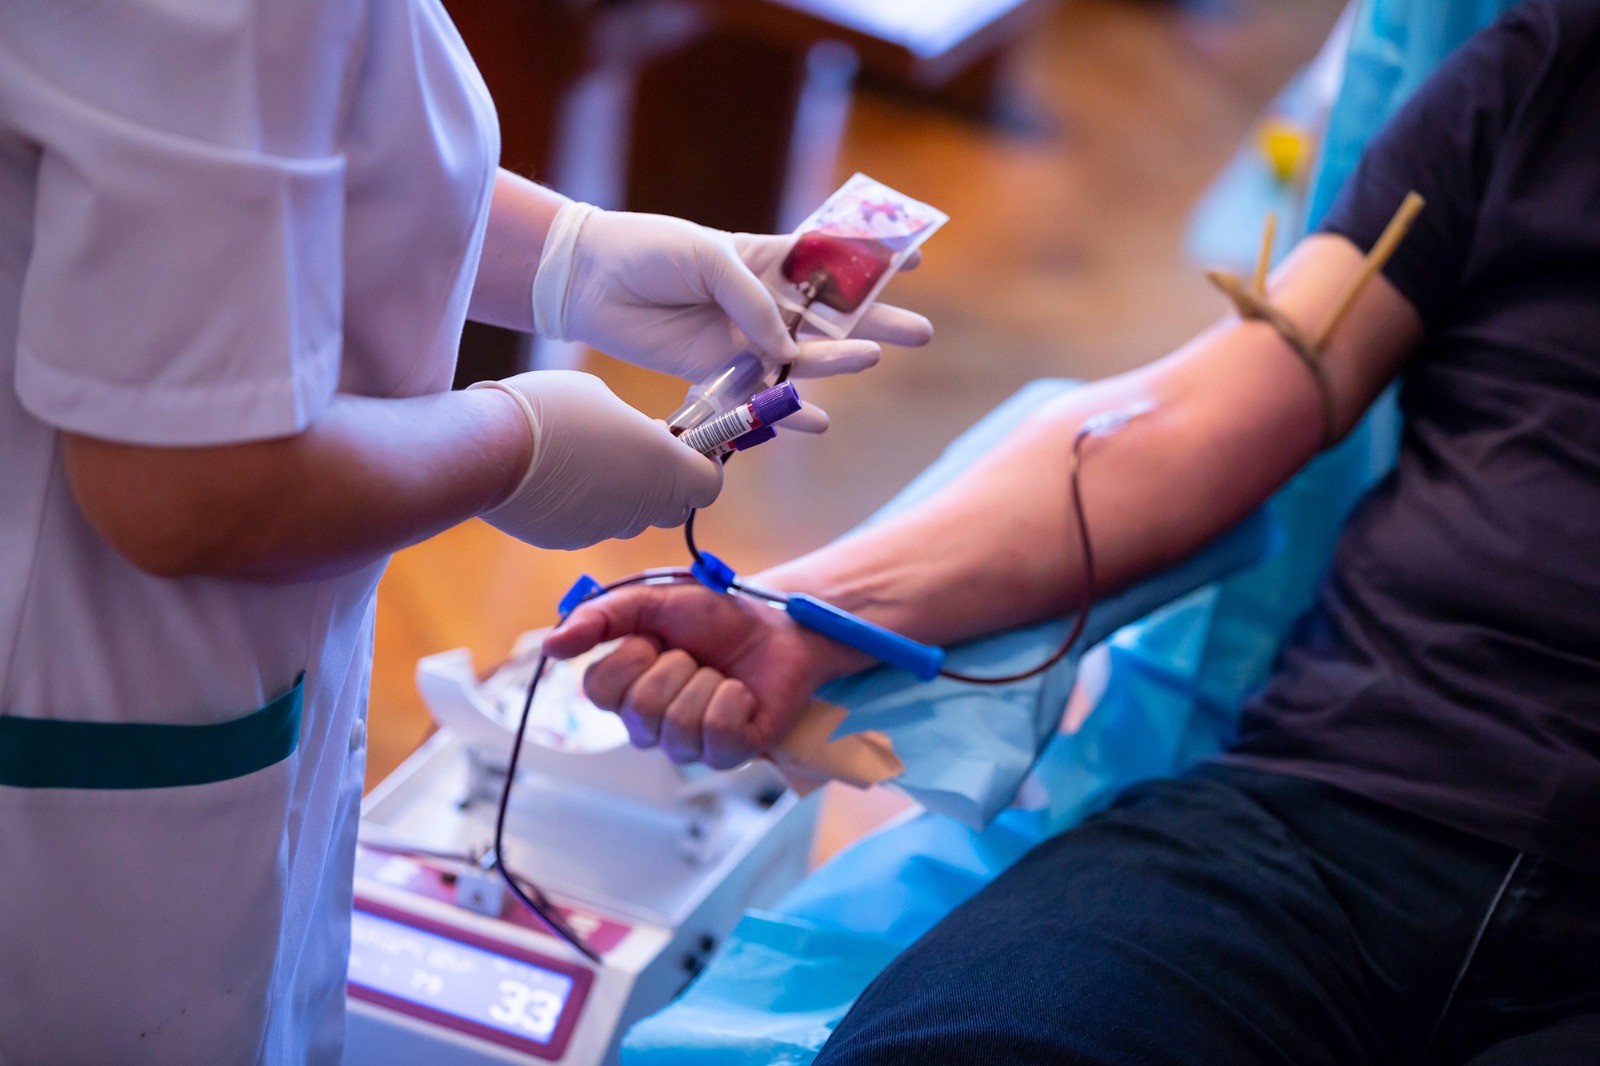 Donar sangre es ayudar a la sobrevivencia de personas que necesitan de transfusiones de esta ,a causa de accidentes o enfermedades graves. (Foto Prensa Libre, Shutterstock)